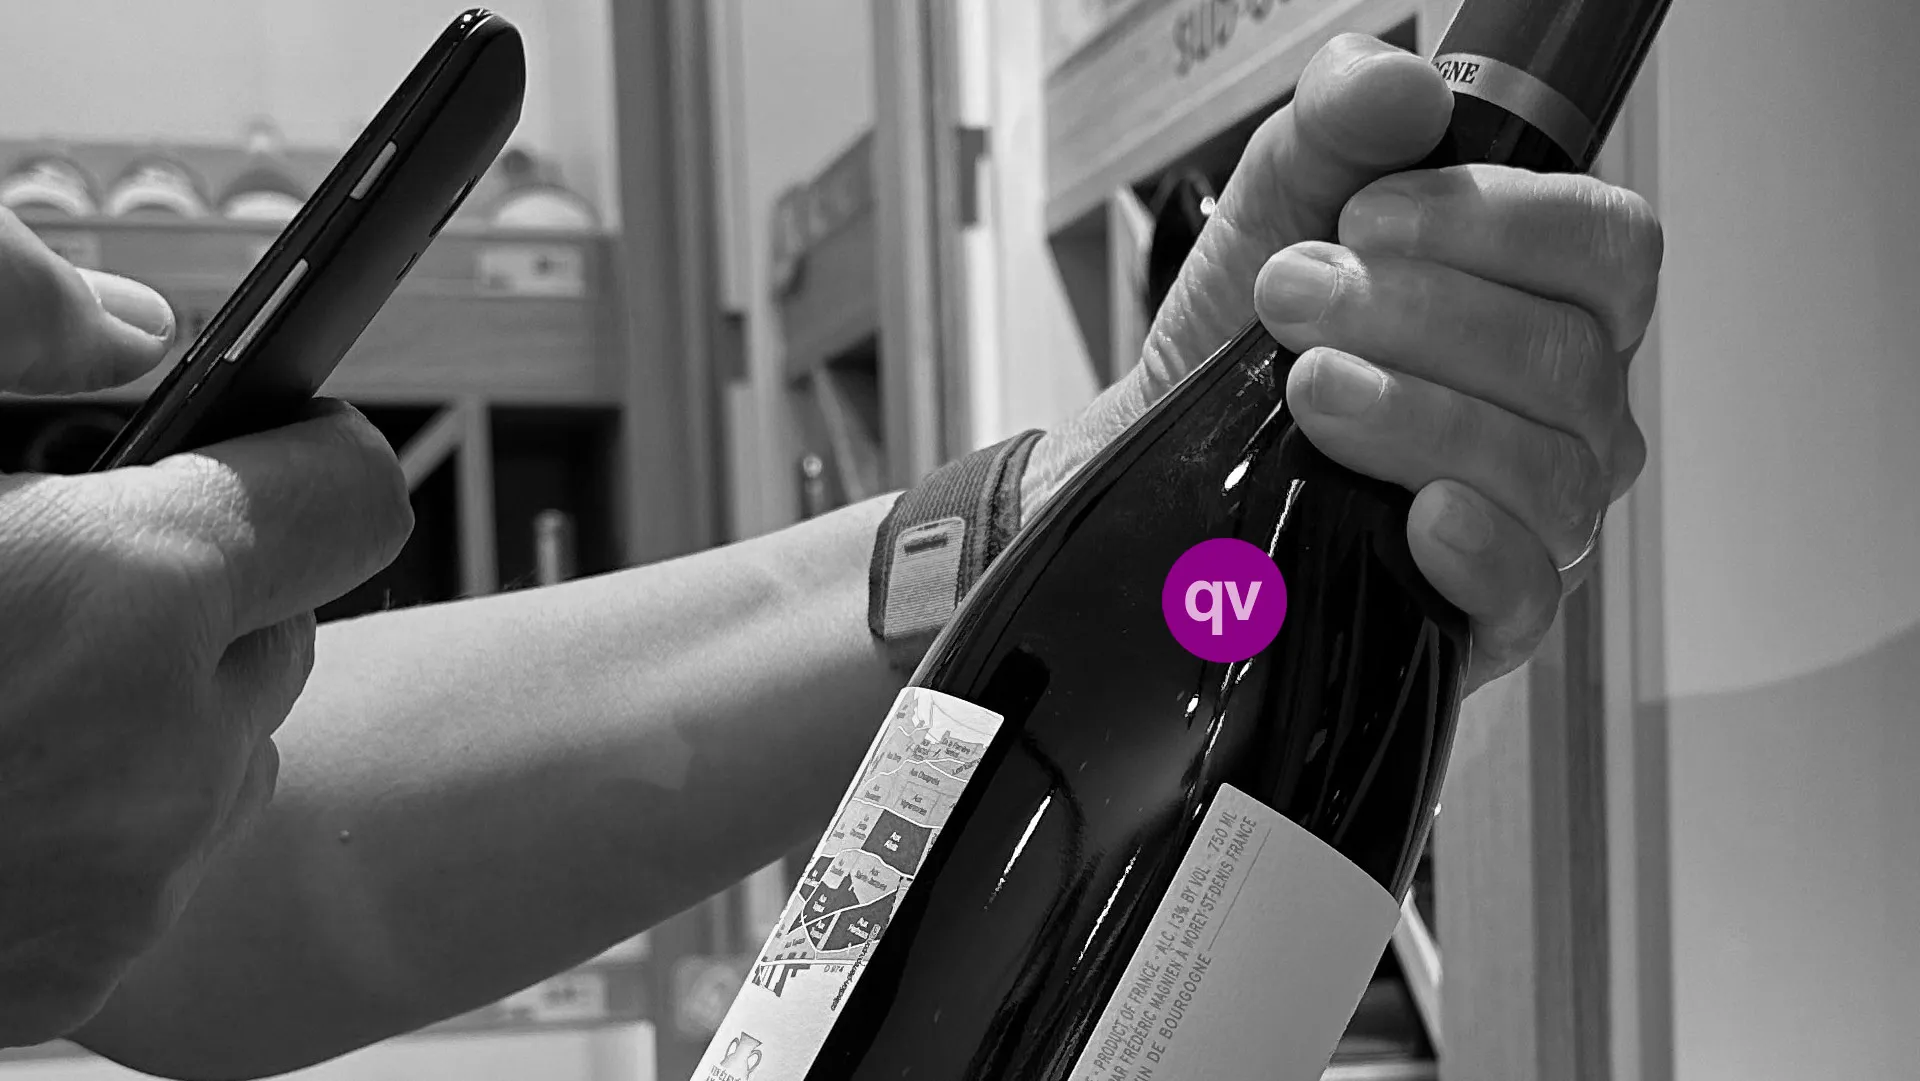 QRCODE VIN ETIQUETTE QR CODE Réglement Européen étiquetage ingrédient et valeur nutritionnelle des vins Etiquette vin 8 Décembre réforme ETIQUETAGE VINISCAN VITIQUETTE VINICODE